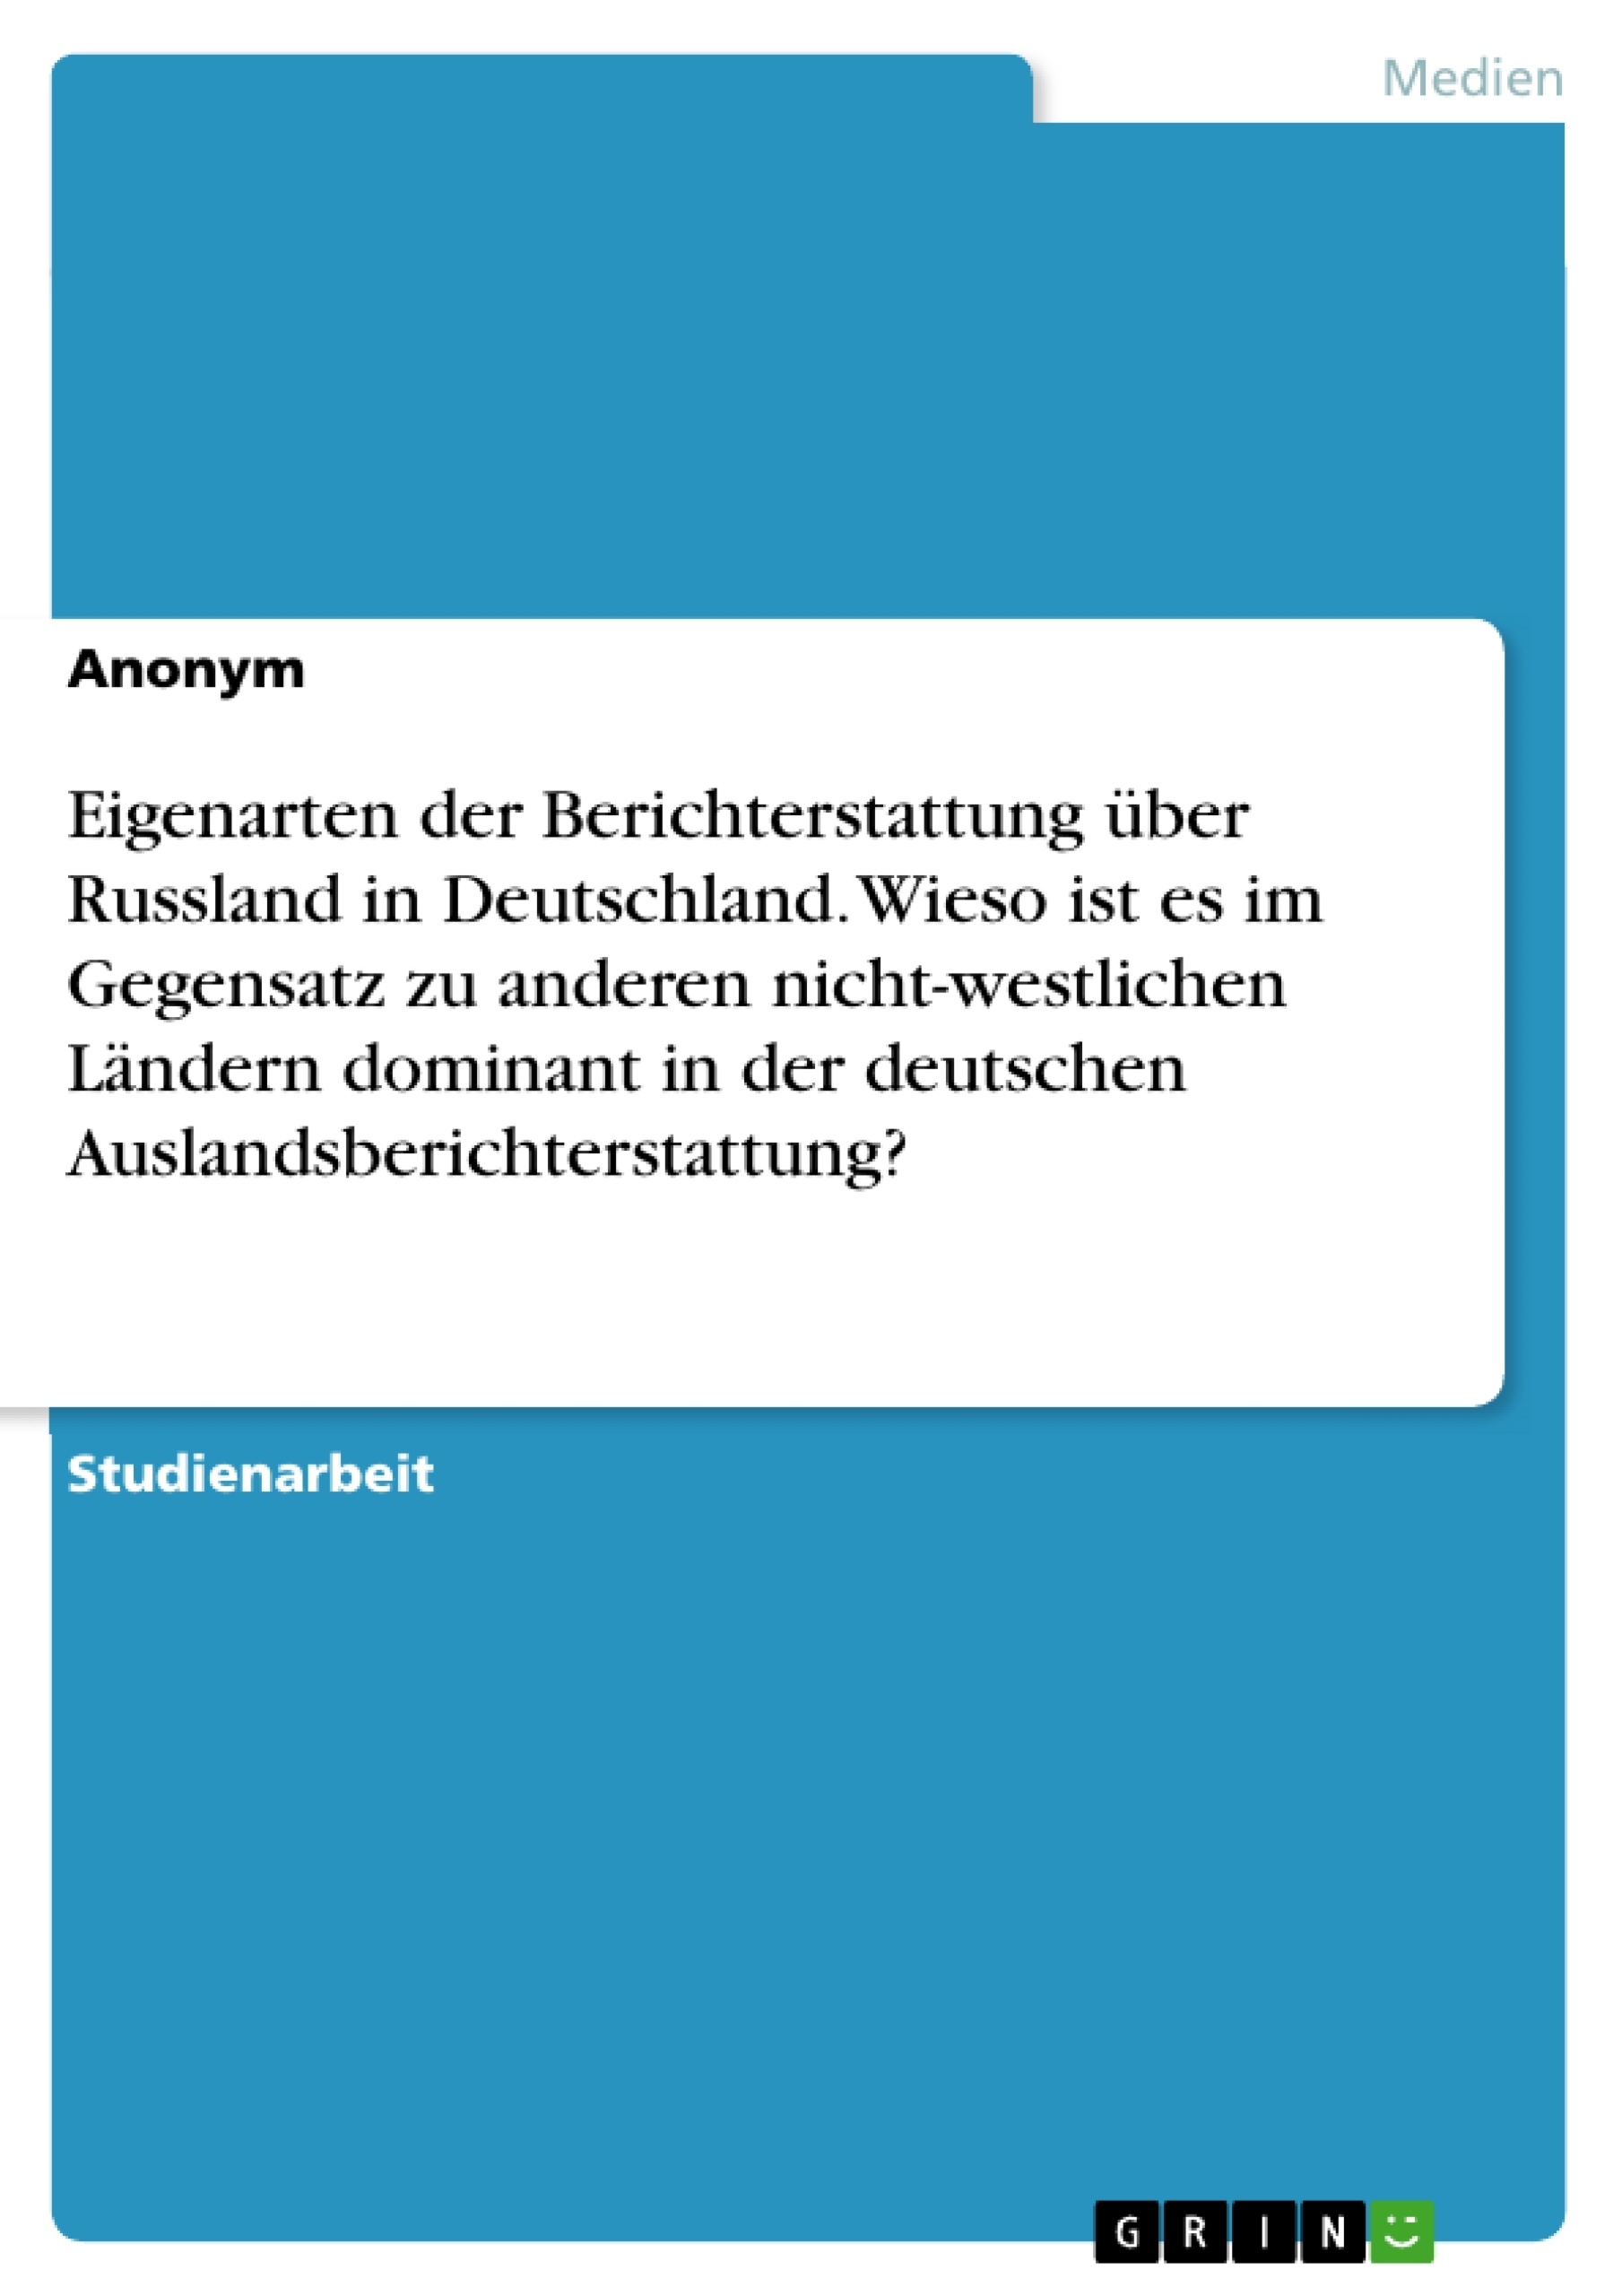 Titel: Eigenarten der Berichterstattung über Russland in Deutschland. Wieso ist es im Gegensatz zu anderen nicht-westlichen Ländern dominant in der deutschen Auslandsberichterstattung?